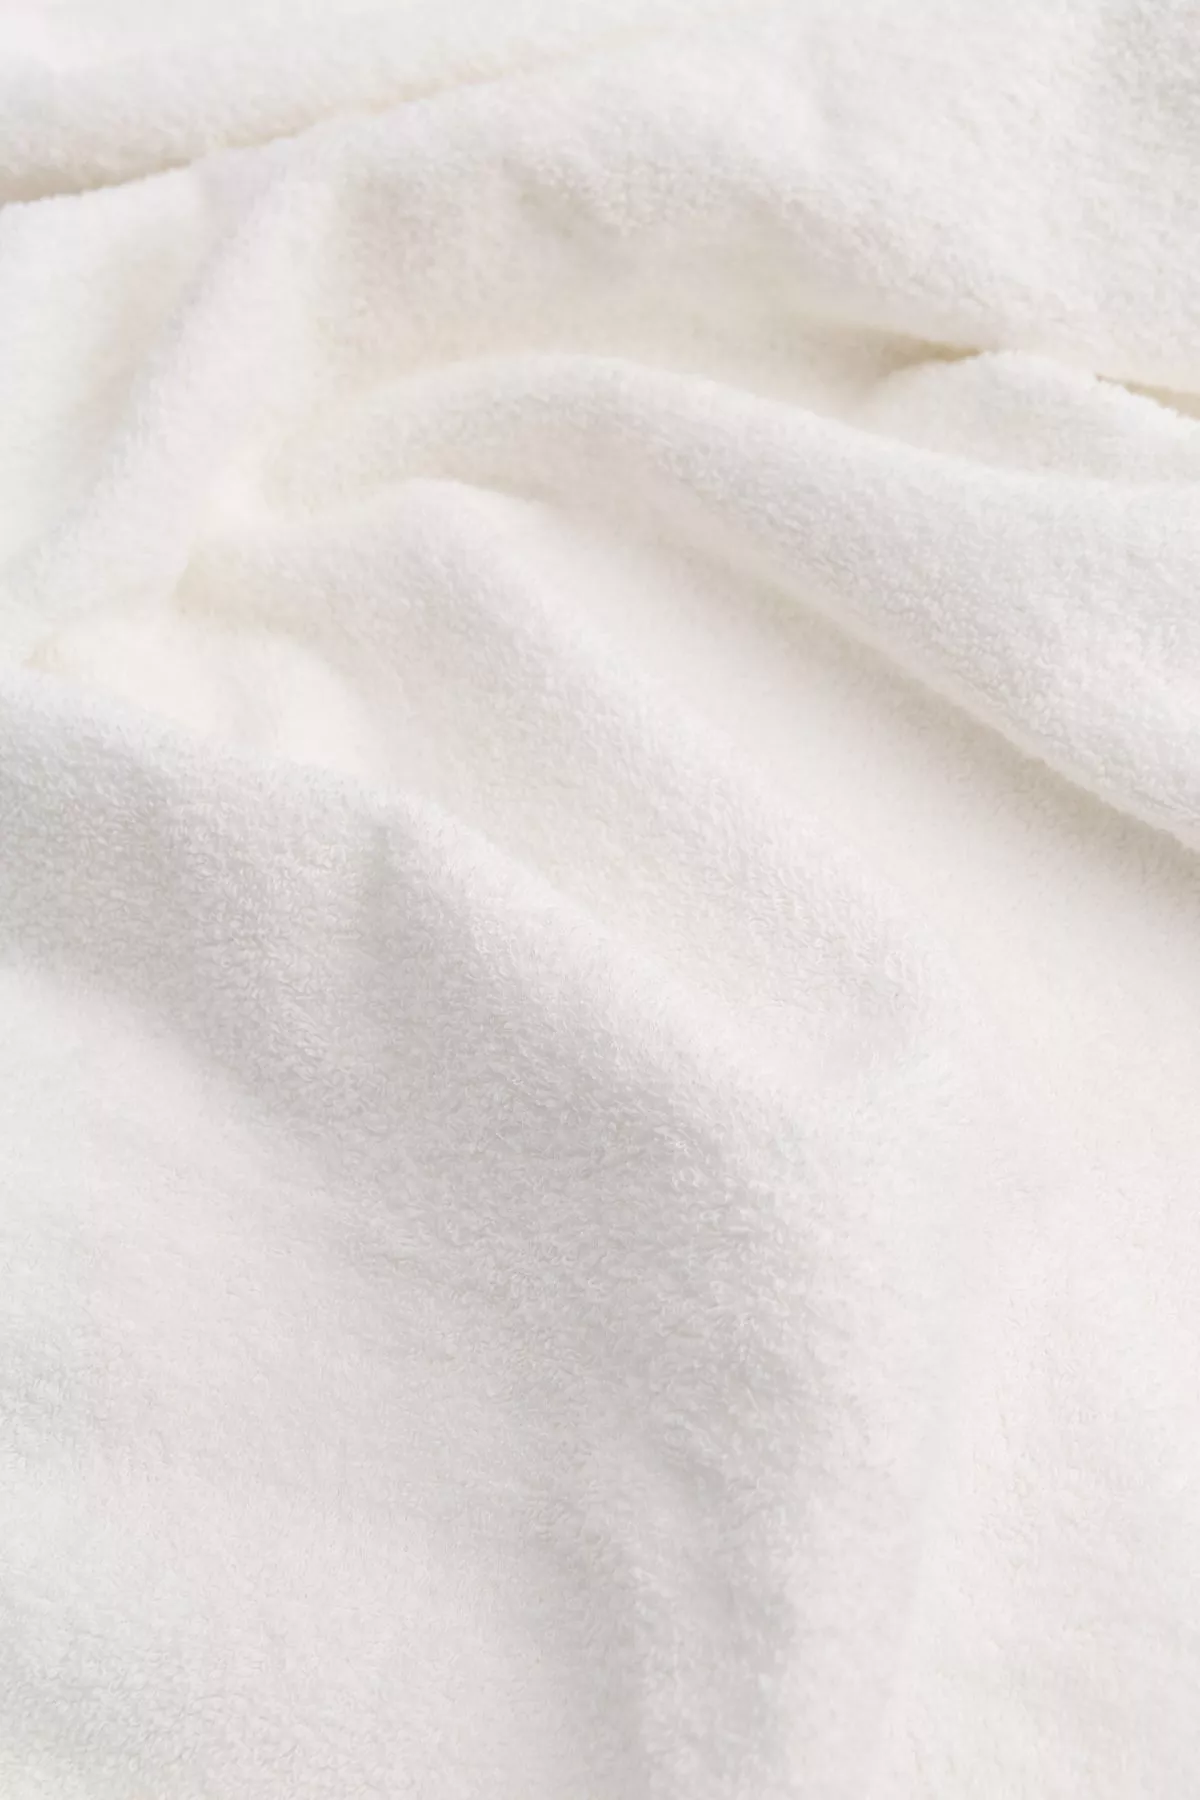 Vonios rankšluostis su kanapės pluoštu Baltas 45x90